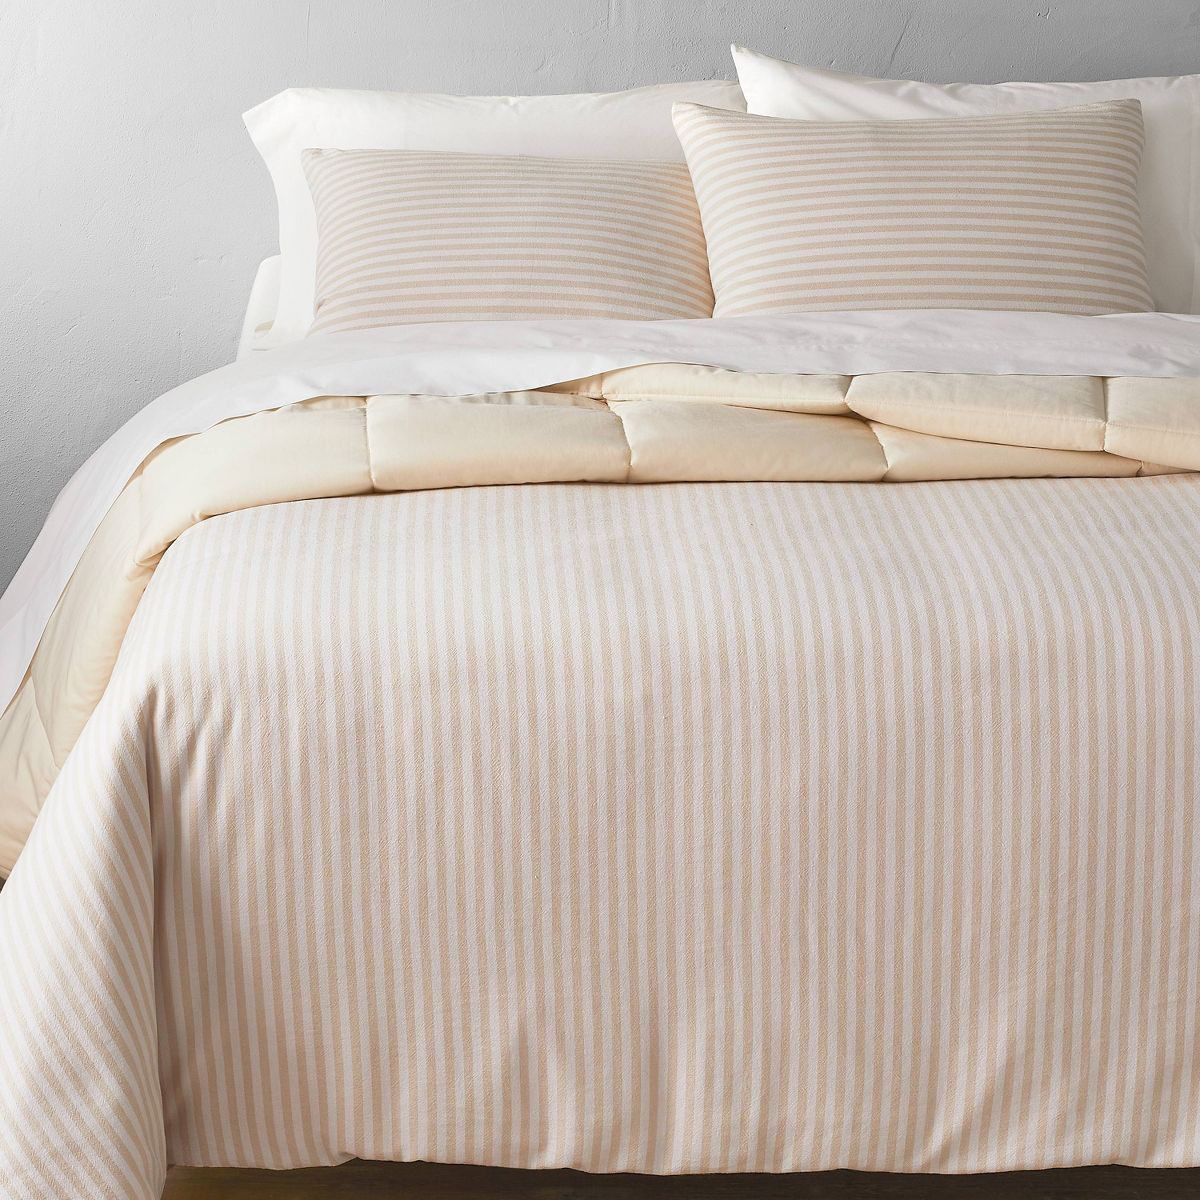 Full/Queen Heavyweight Linen Blend Stripe Comforter & Sham Set Natural - Casaluna™ | Target